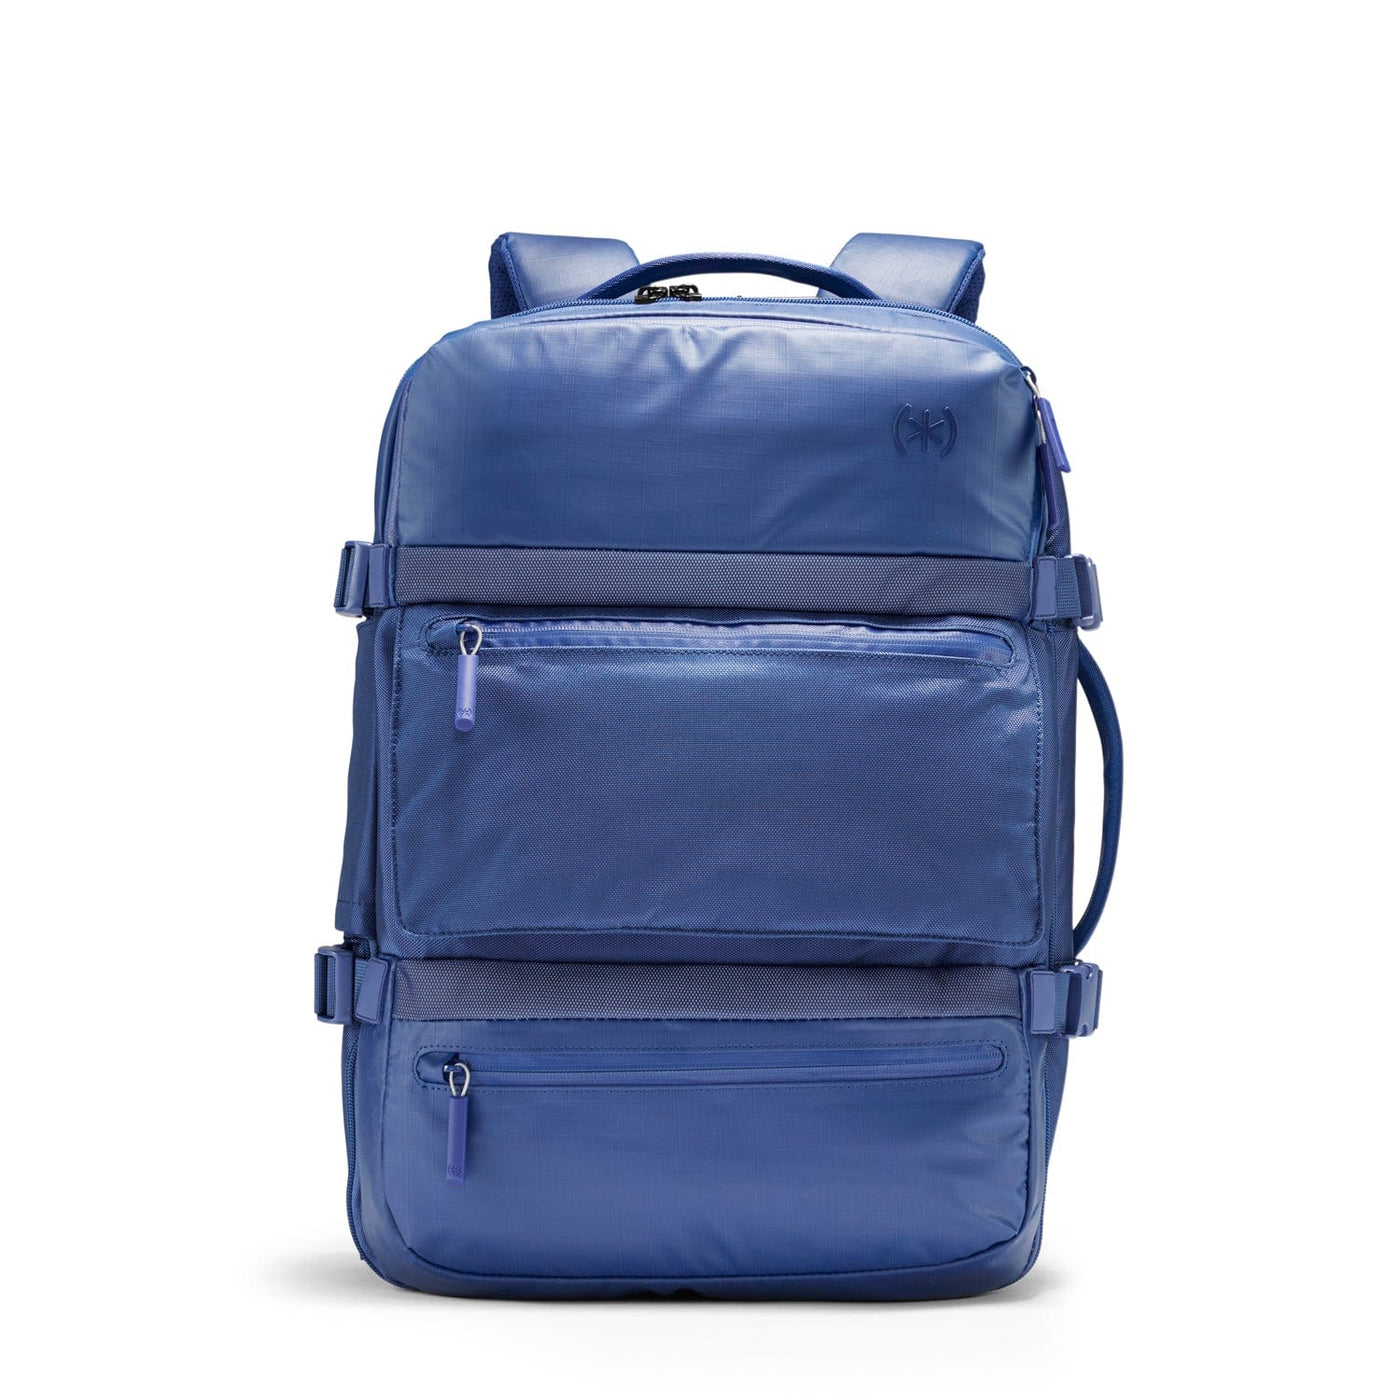 Speck AftPack Black Backpack Bag Case For Notebook Laptop Tablet 17